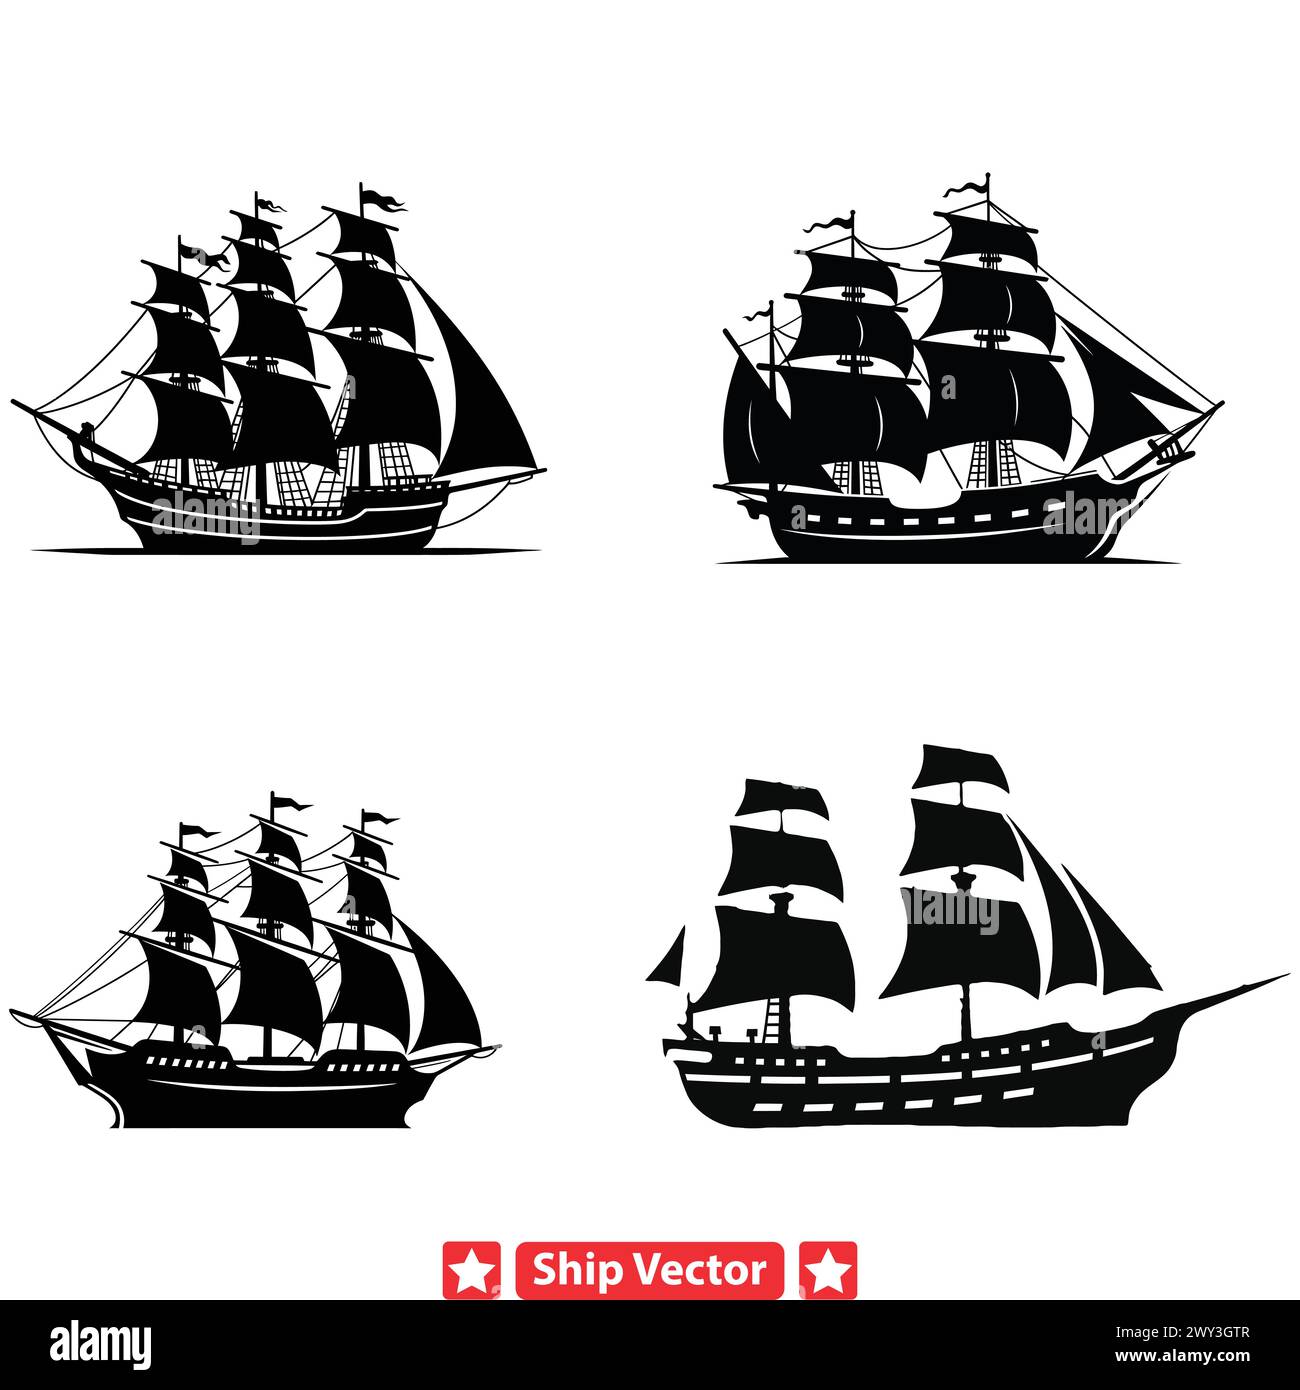 Patrimoine baleinier silhouettes de navires historiques commémorant les pratiques maritimes traditionnelles Illustration de Vecteur